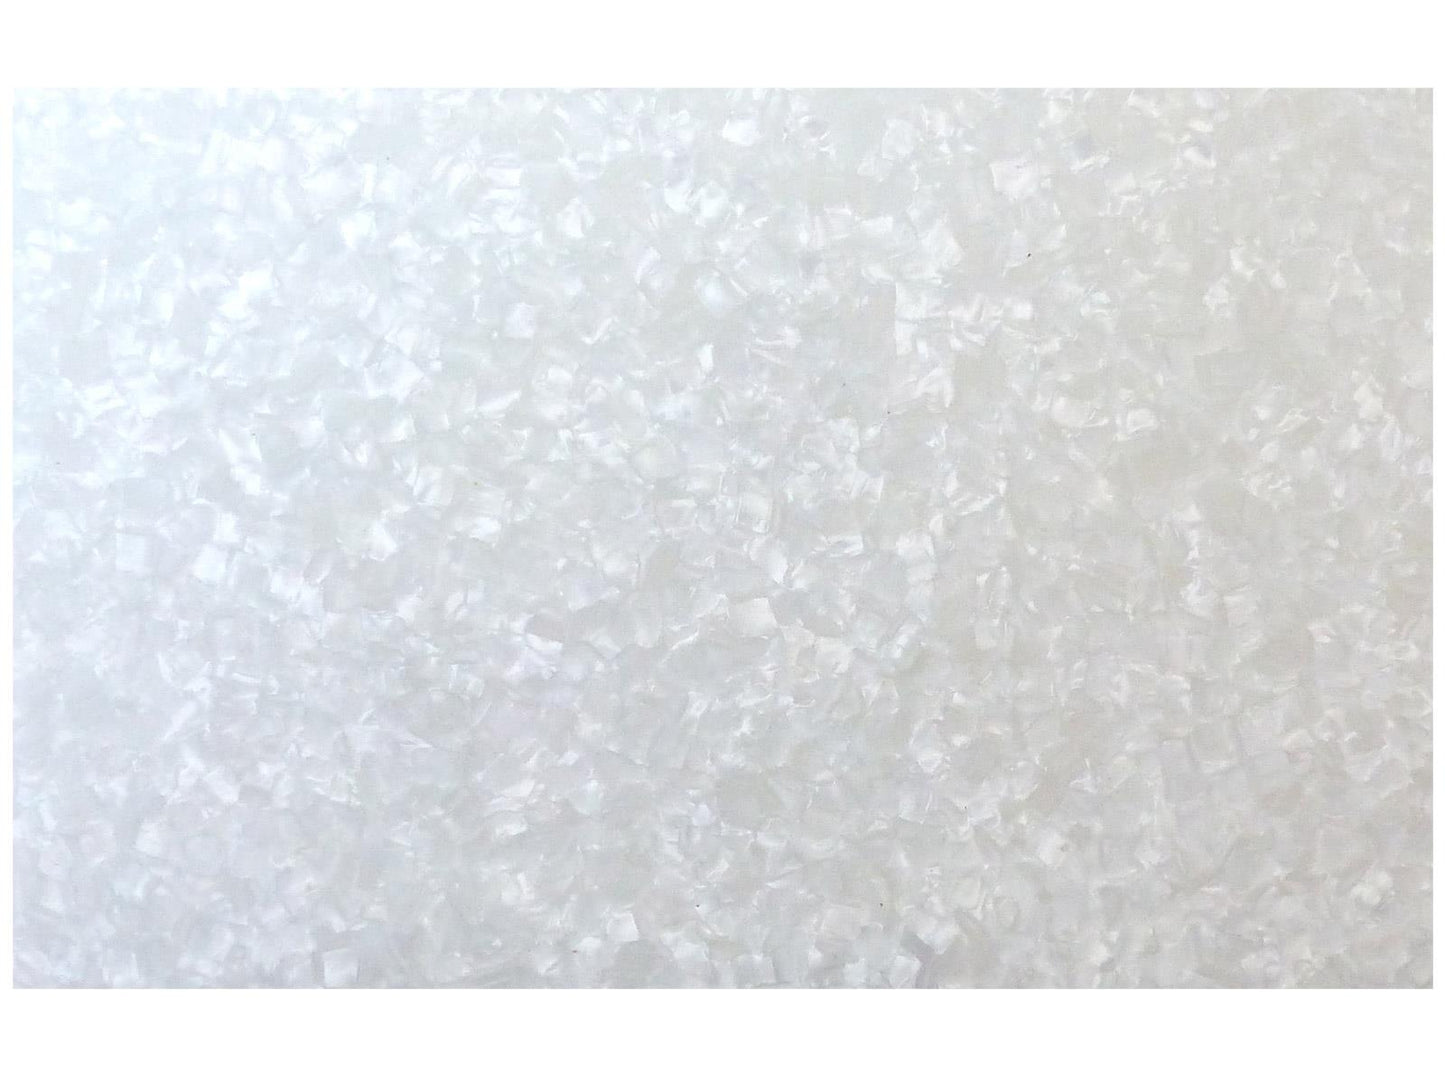 Incudo White Pearloid Celluloid Sheet - 430x290x1.5mm (16.9x11.42x0.06")